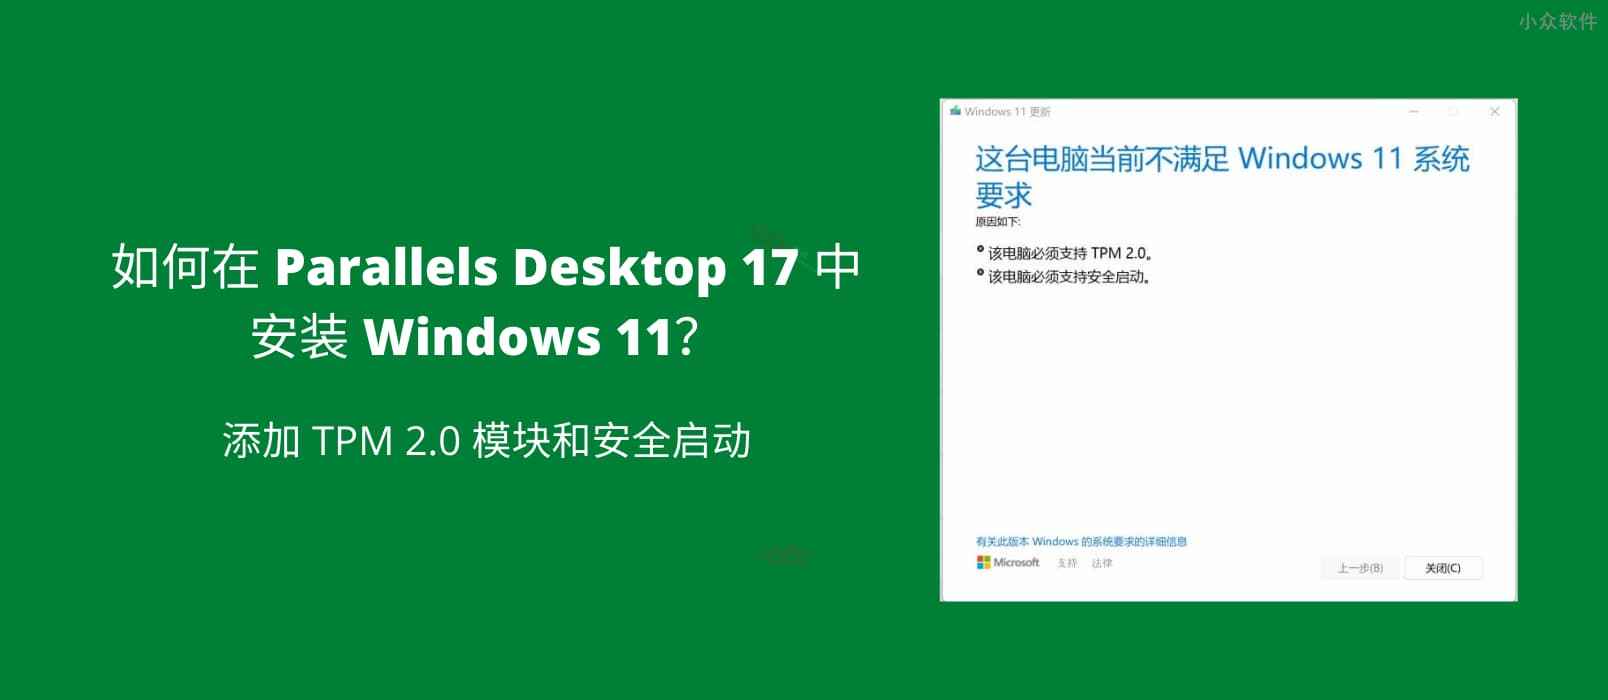 如何在 Parallels Desktop 17 中安装 Windows 11？ 添加 TPM 2.0 模块和安全启动 1